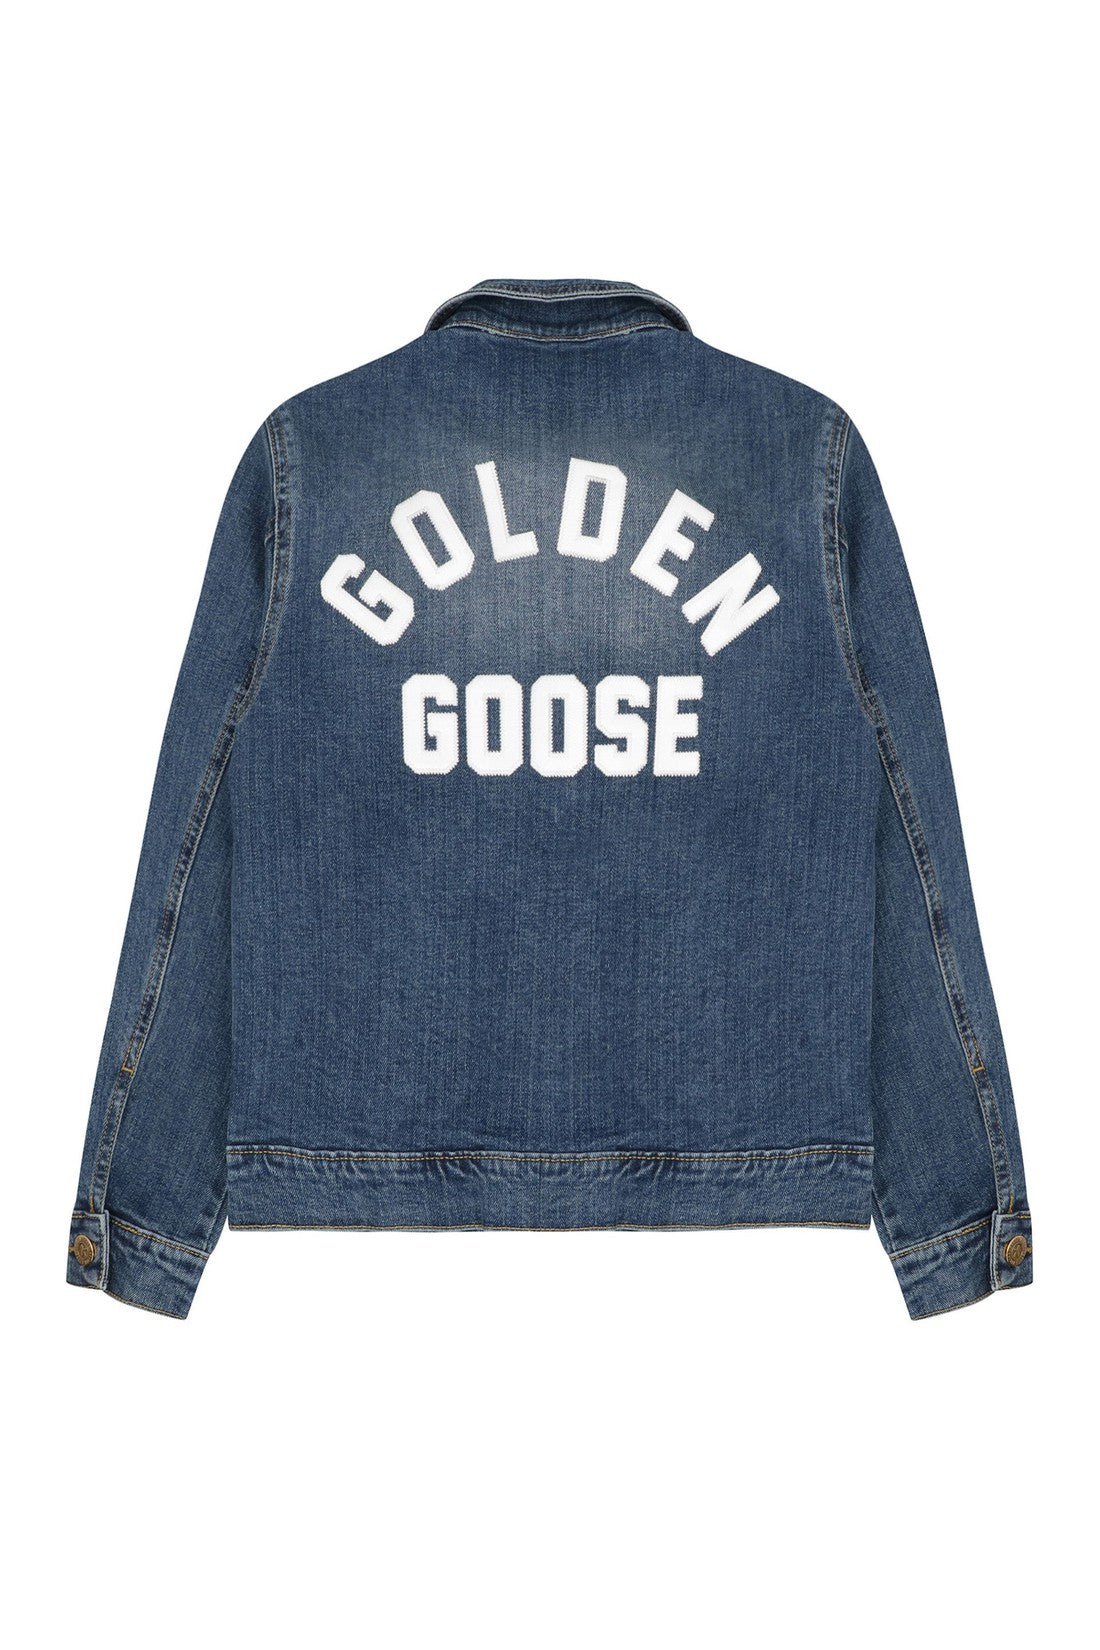 Golden Goose Kids-OUTLET-SALE-Denim jacket-ARCHIVIST